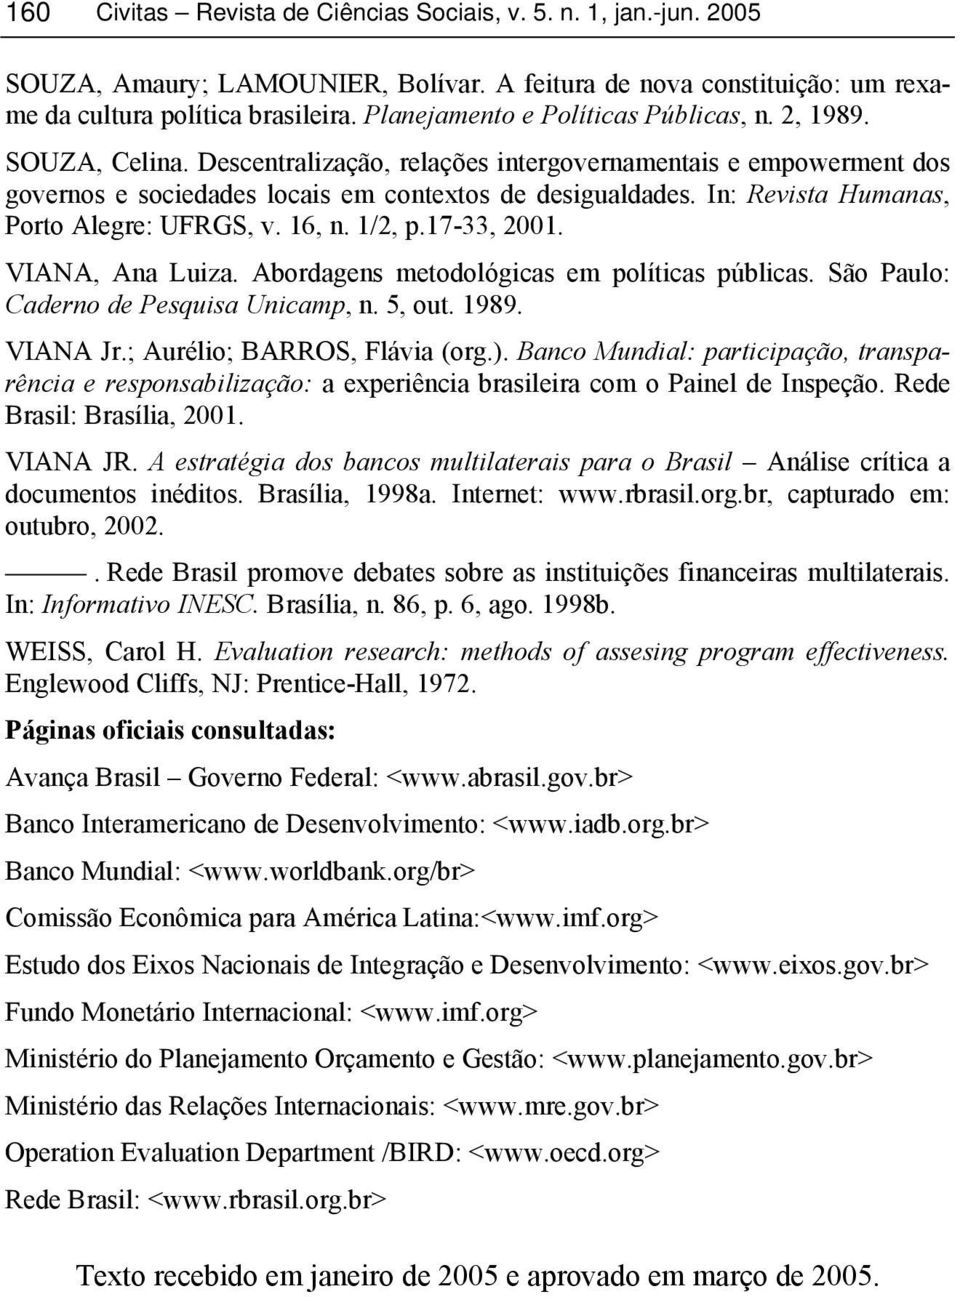 VIANA, Ana Luiza. Abordagens metodológicas em políticas públicas. São Paulo: Caderno de Pesquisa Unicamp, n. 5, out. 1989. VIANA Jr.; Aurélio; BARROS, Flávia (org.).